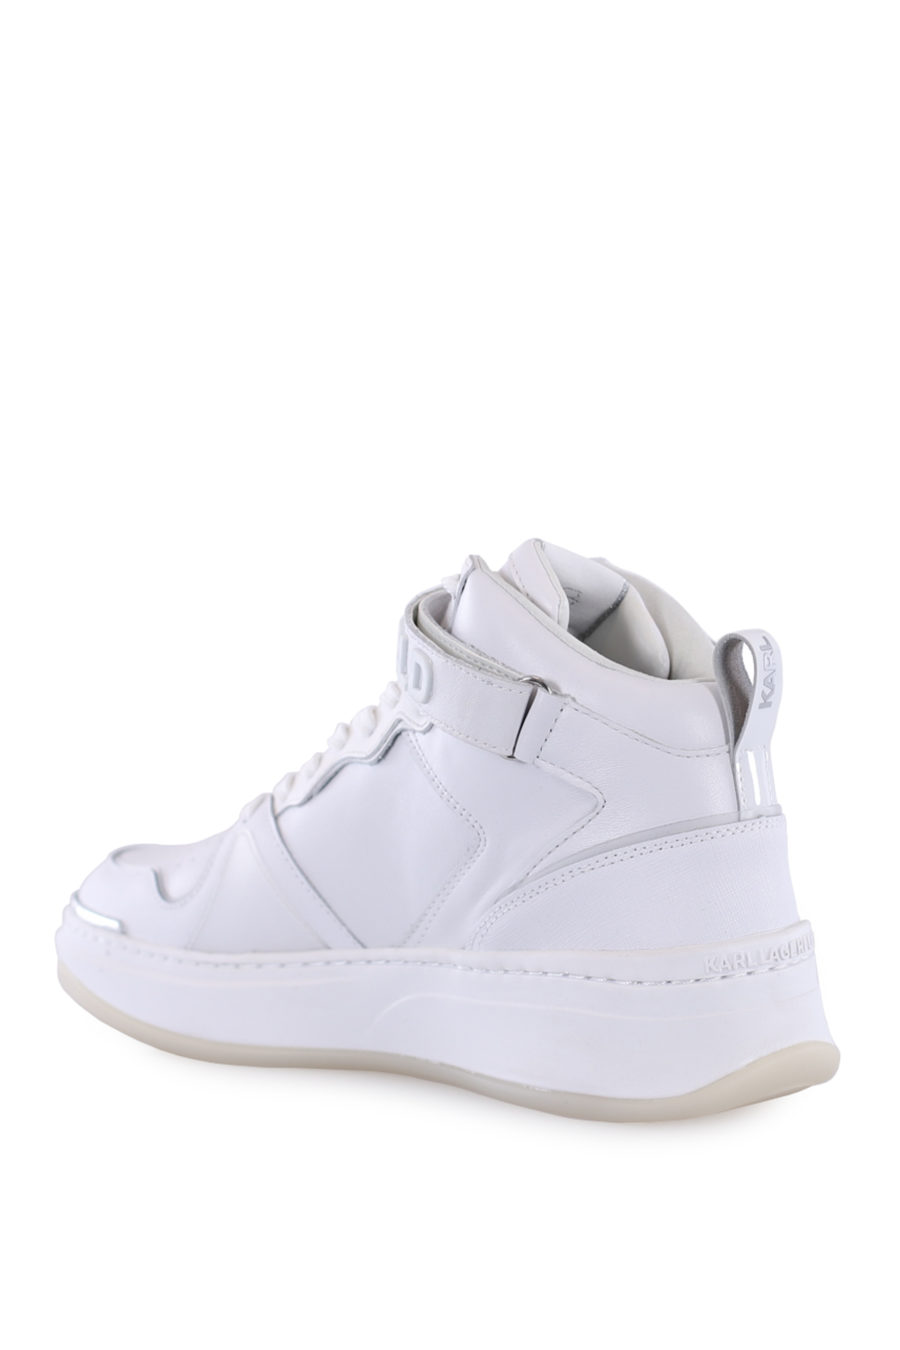 Zapatillas blancas y plateado con logo engomado en velcro - IMG 0156